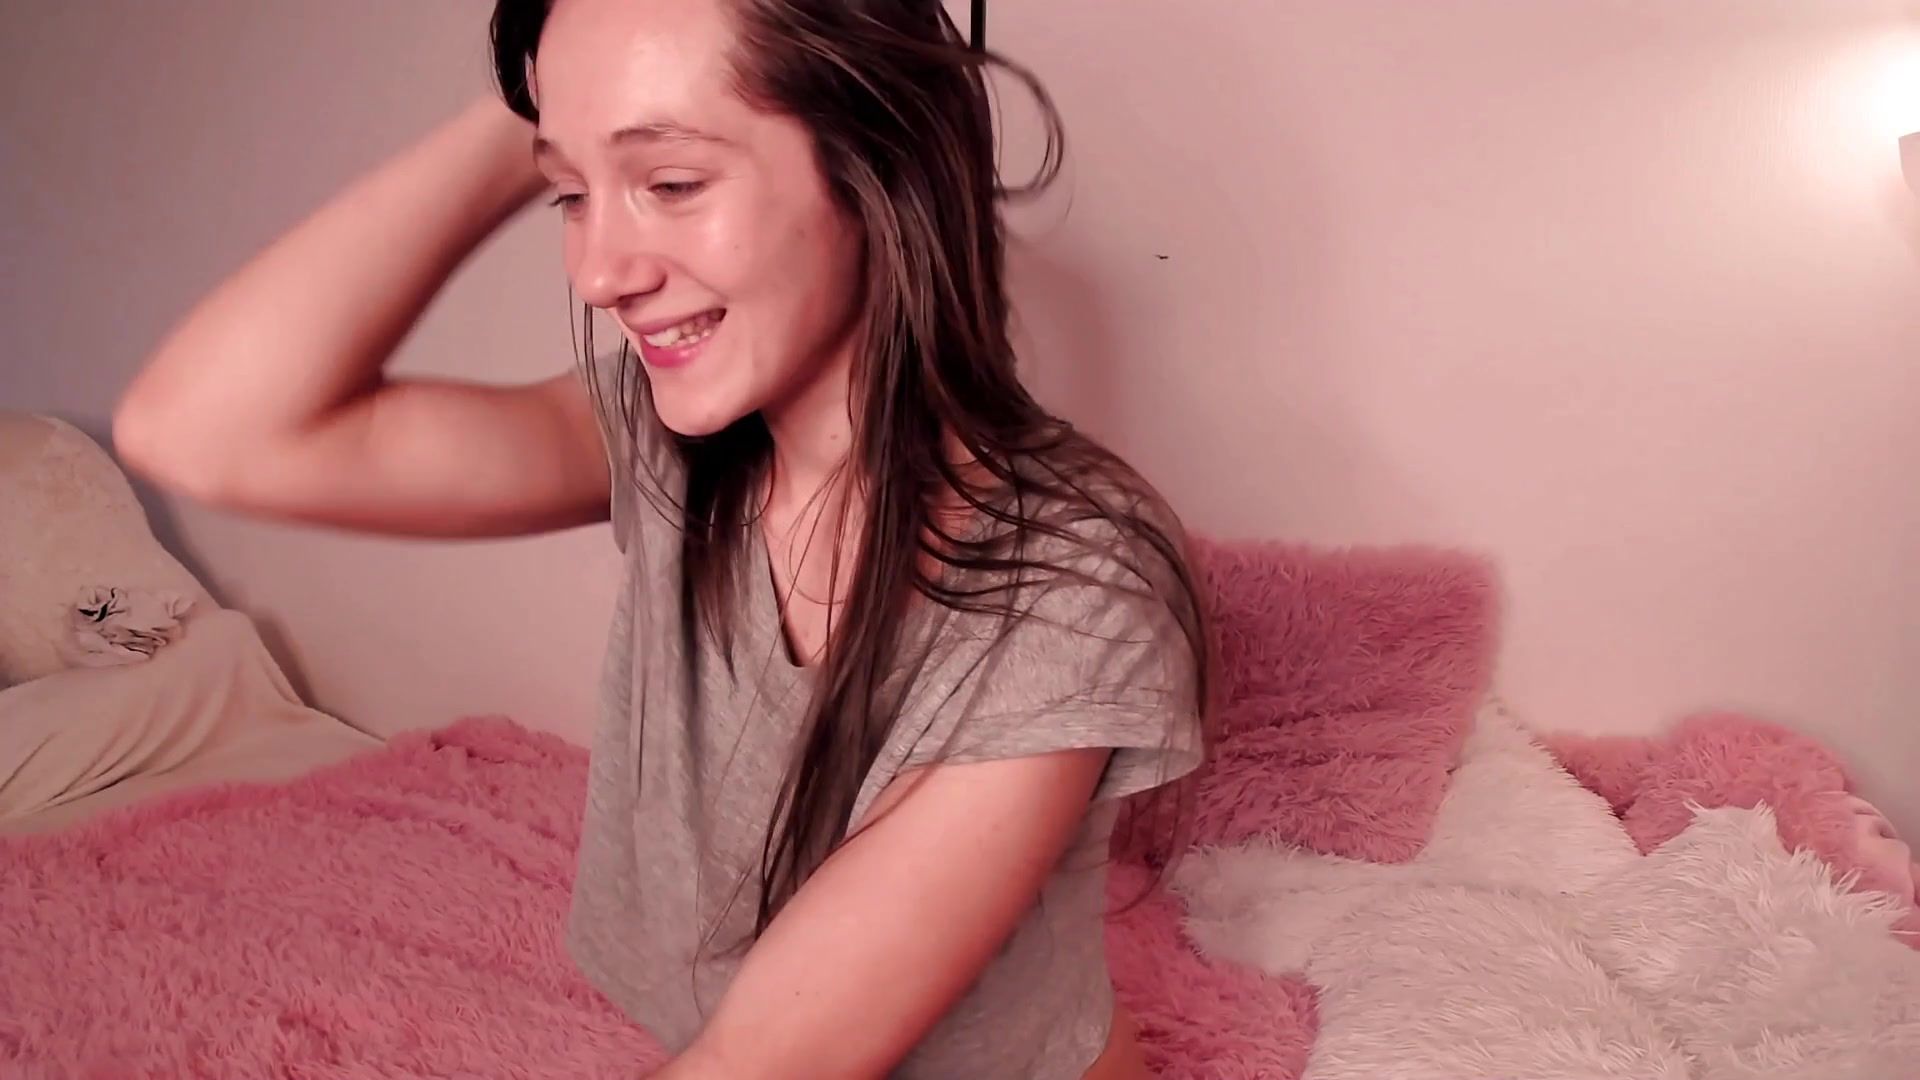 Oral Petite amateur teen girl - webcam sex show Panty